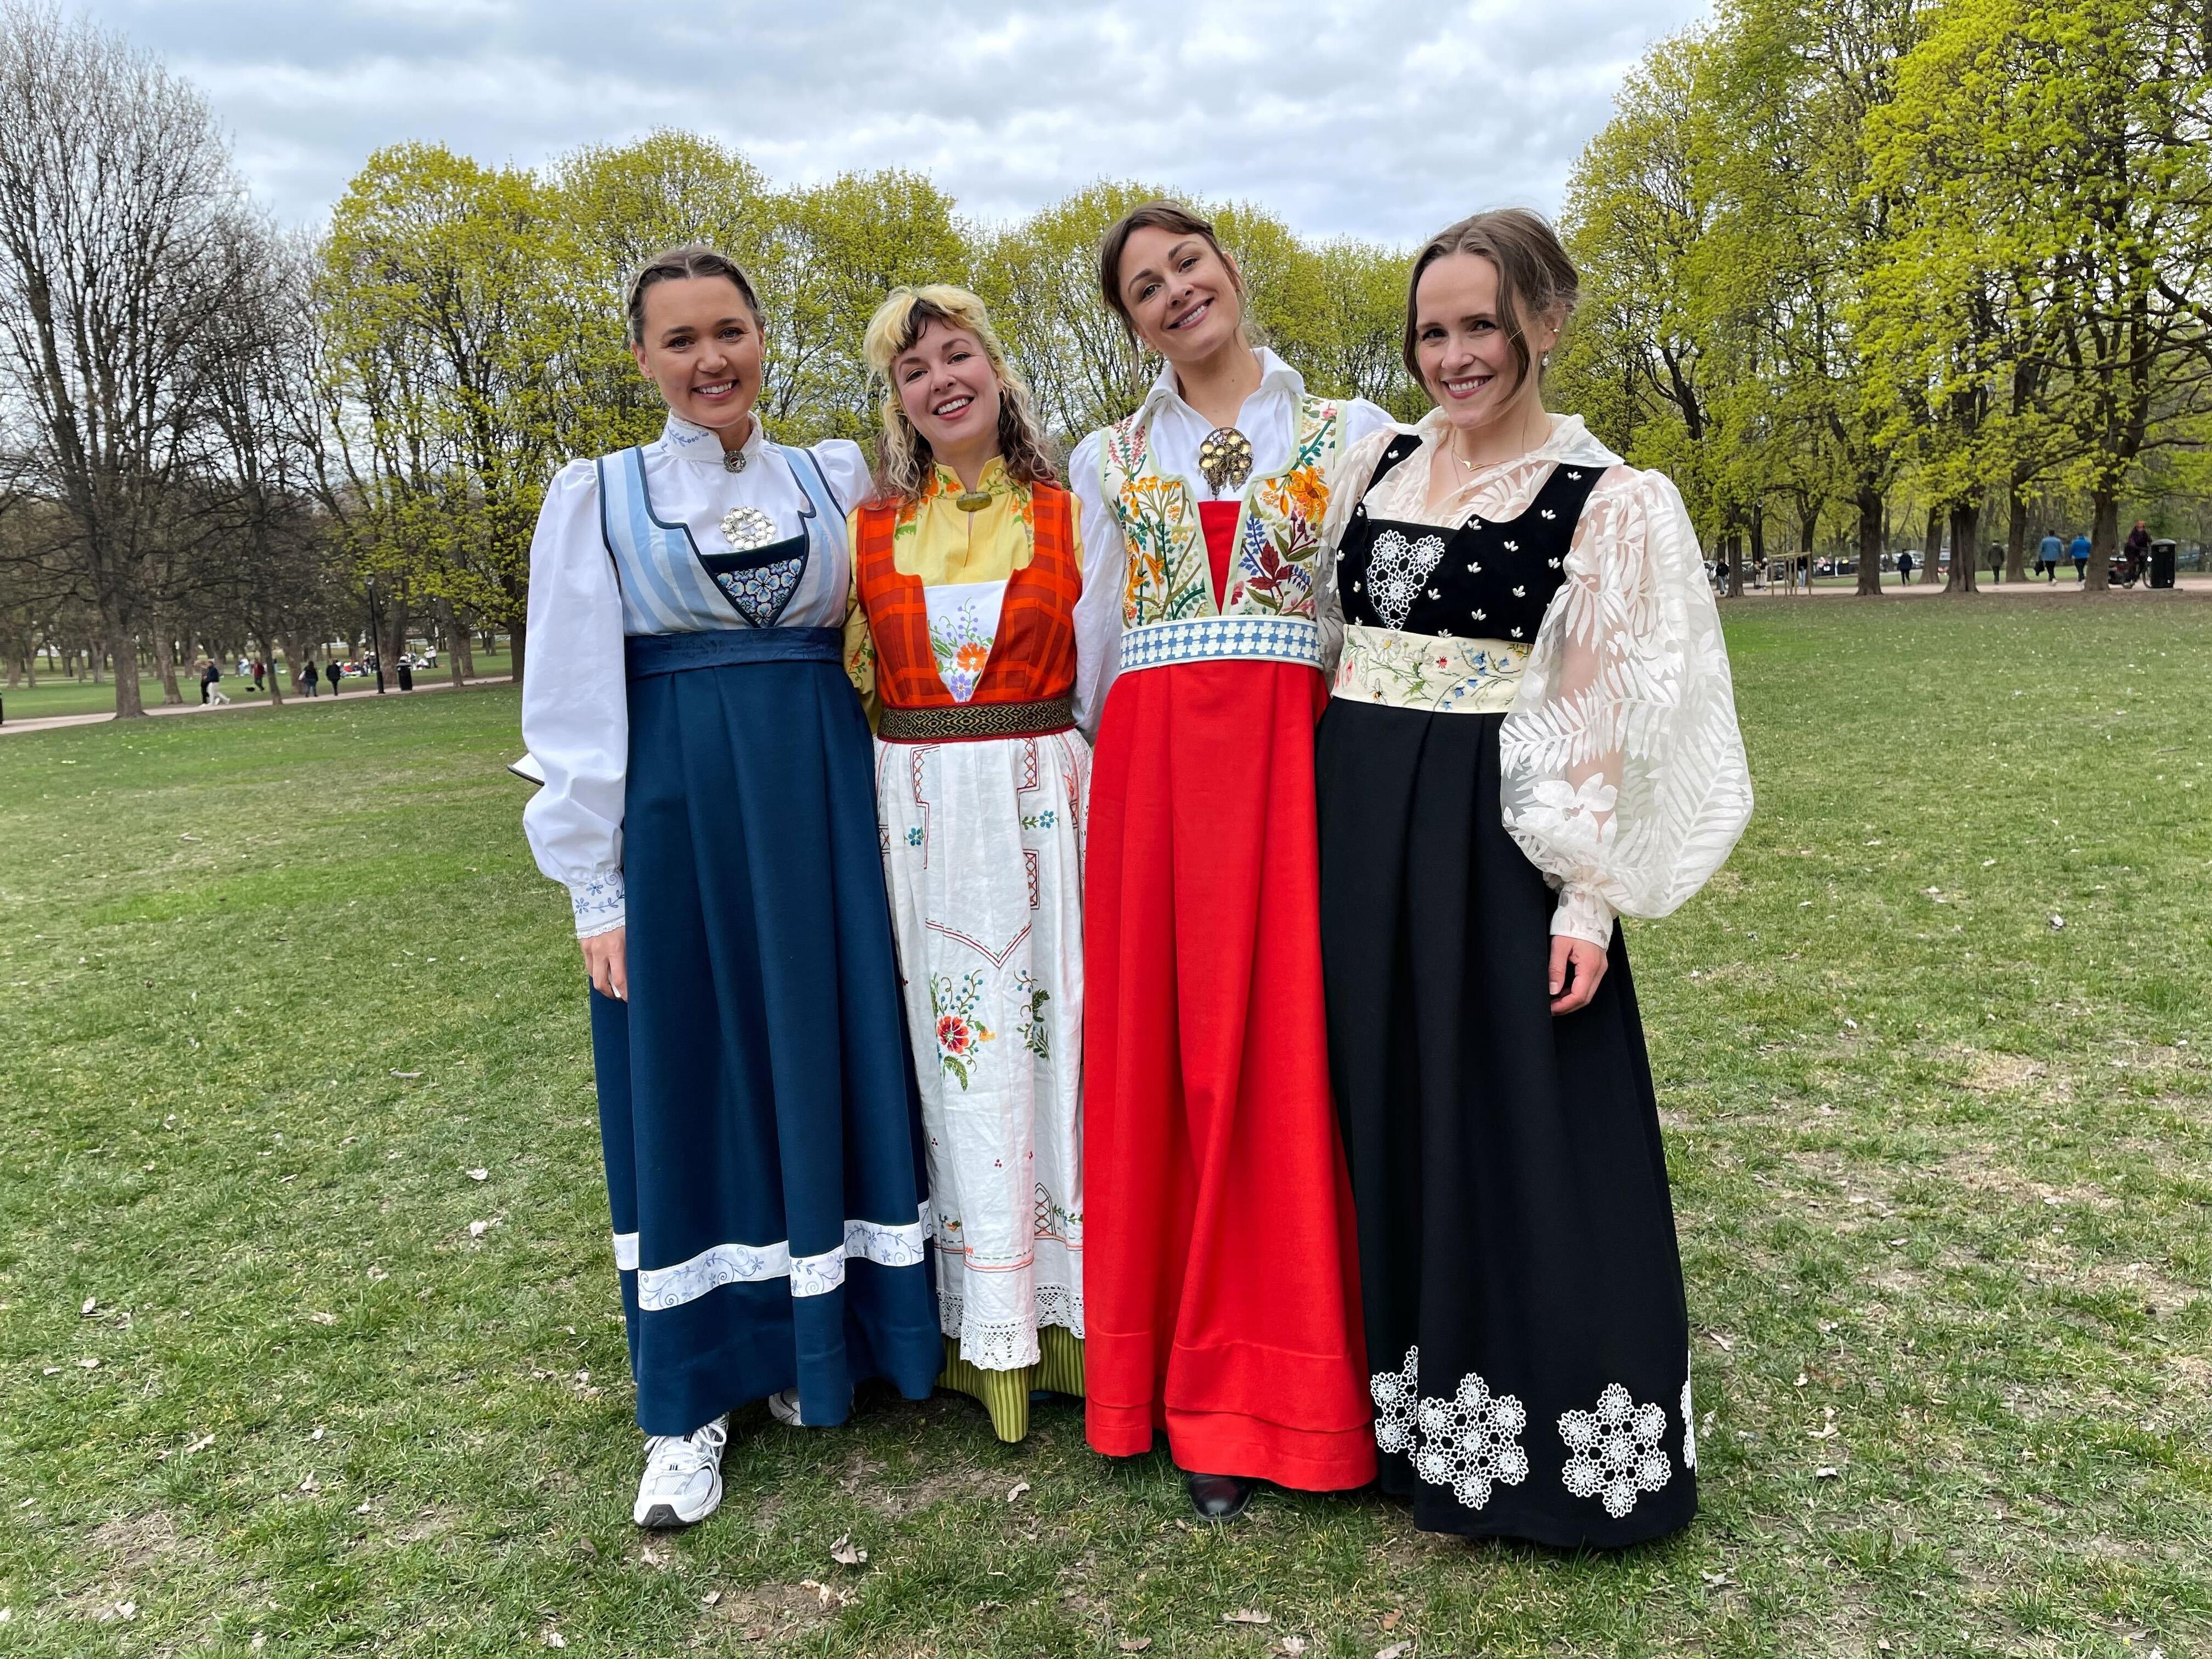 STOR SUKSESS: Fra venstre: Ingrid Bergtun, Mari Nordén, Jenny Skavlan og Ingrid Vik Lysne. I dag samlet de syglade mennesker for å vise frem festdraktene sine.